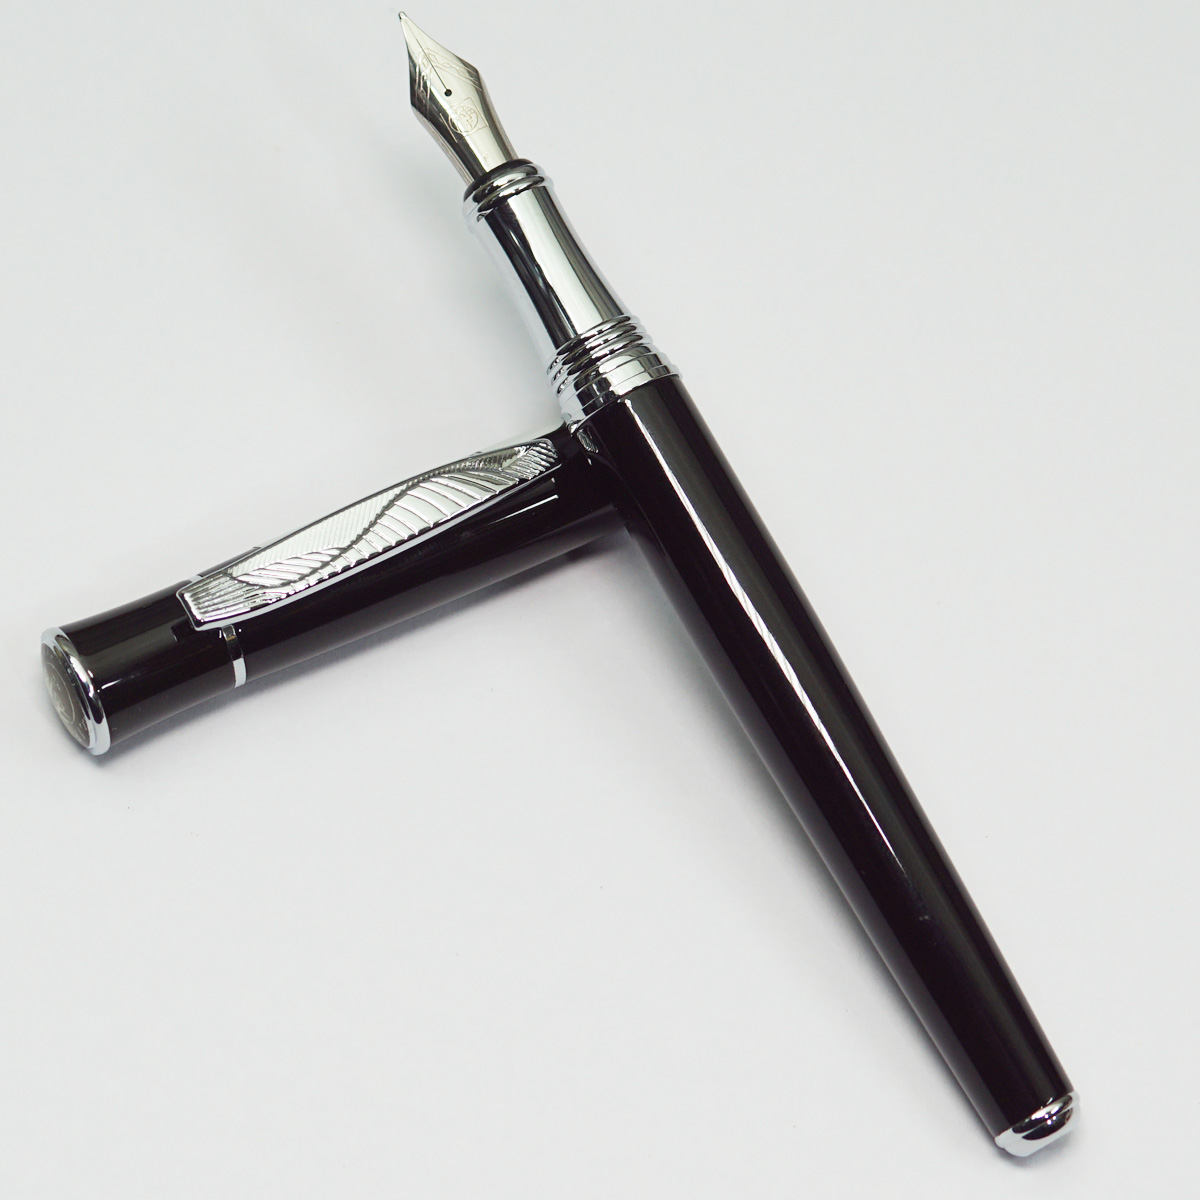 Pimio Glossy Black Color Body With Silver Cap Fine Nib Converter Type Fountain Pen SKU 23029